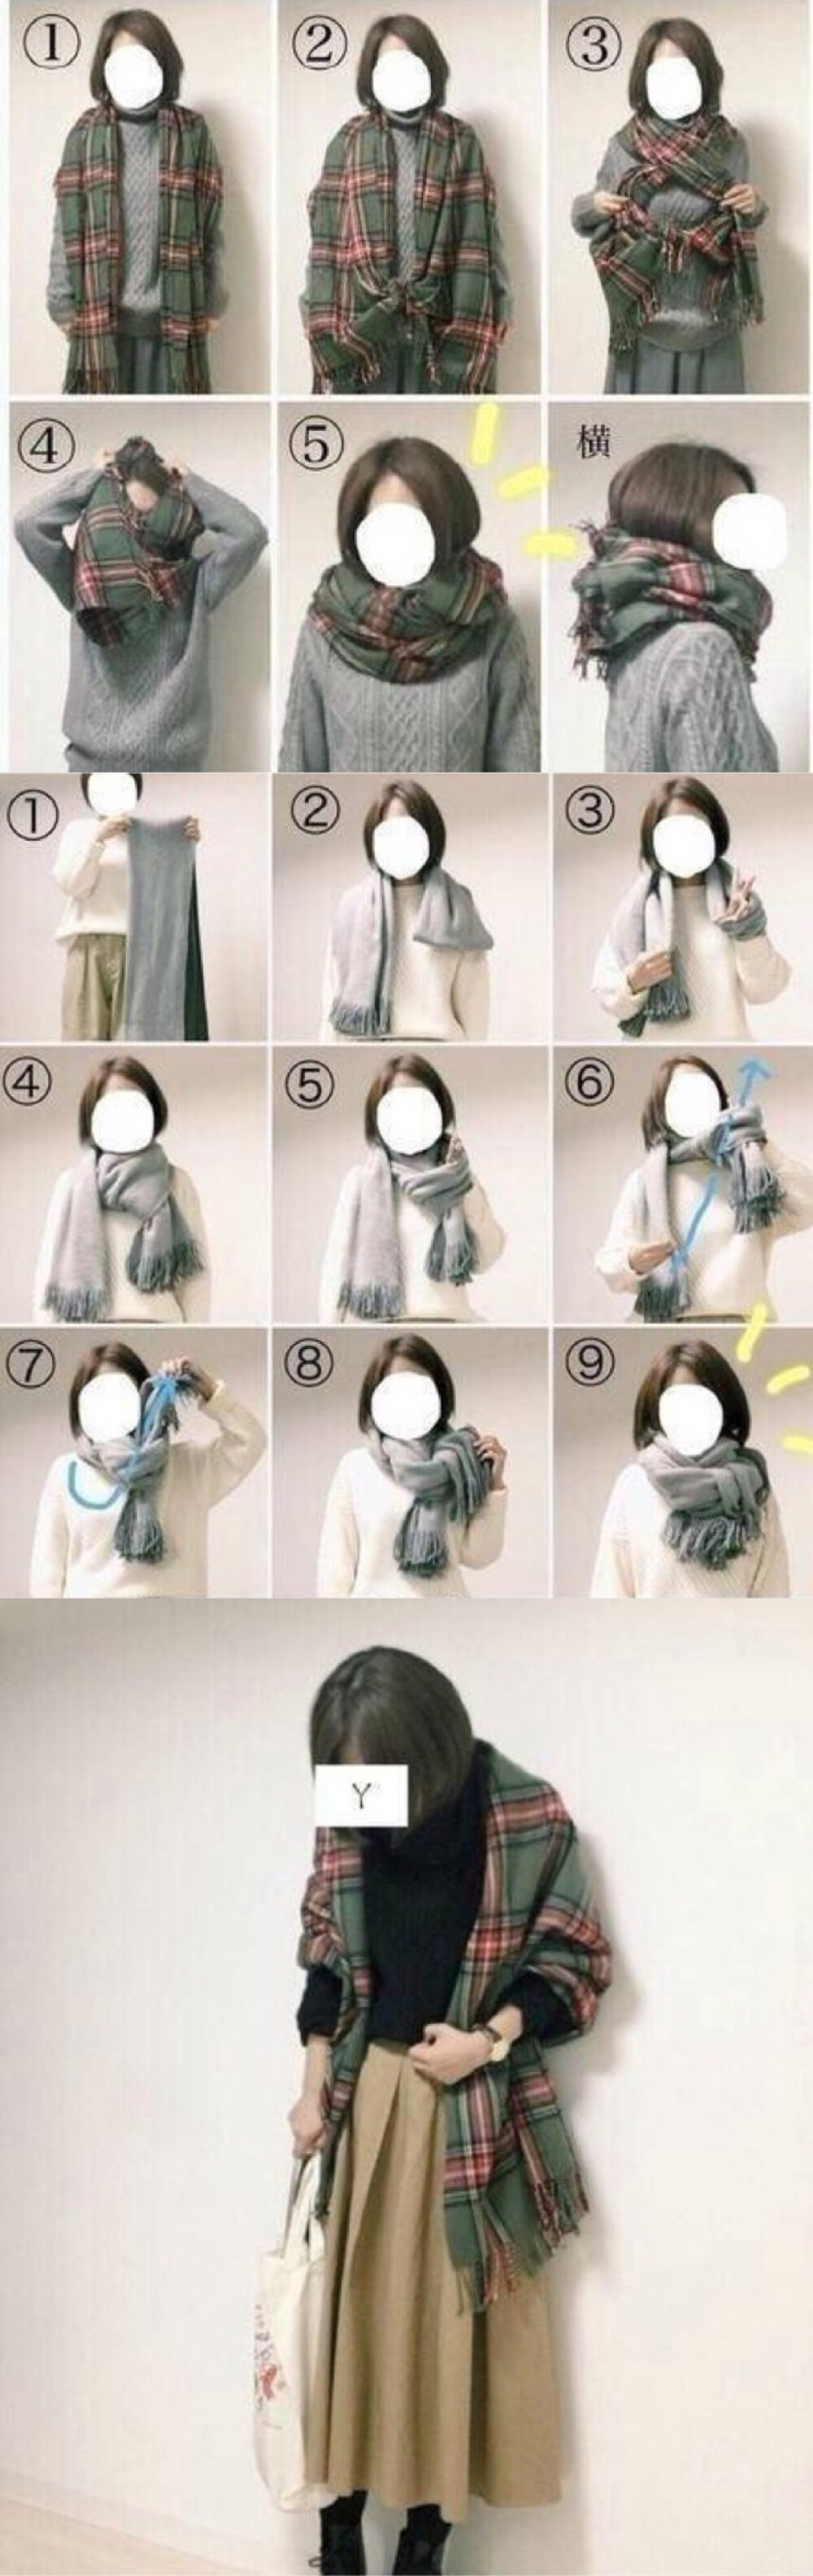 夏季围巾的各种围法图片